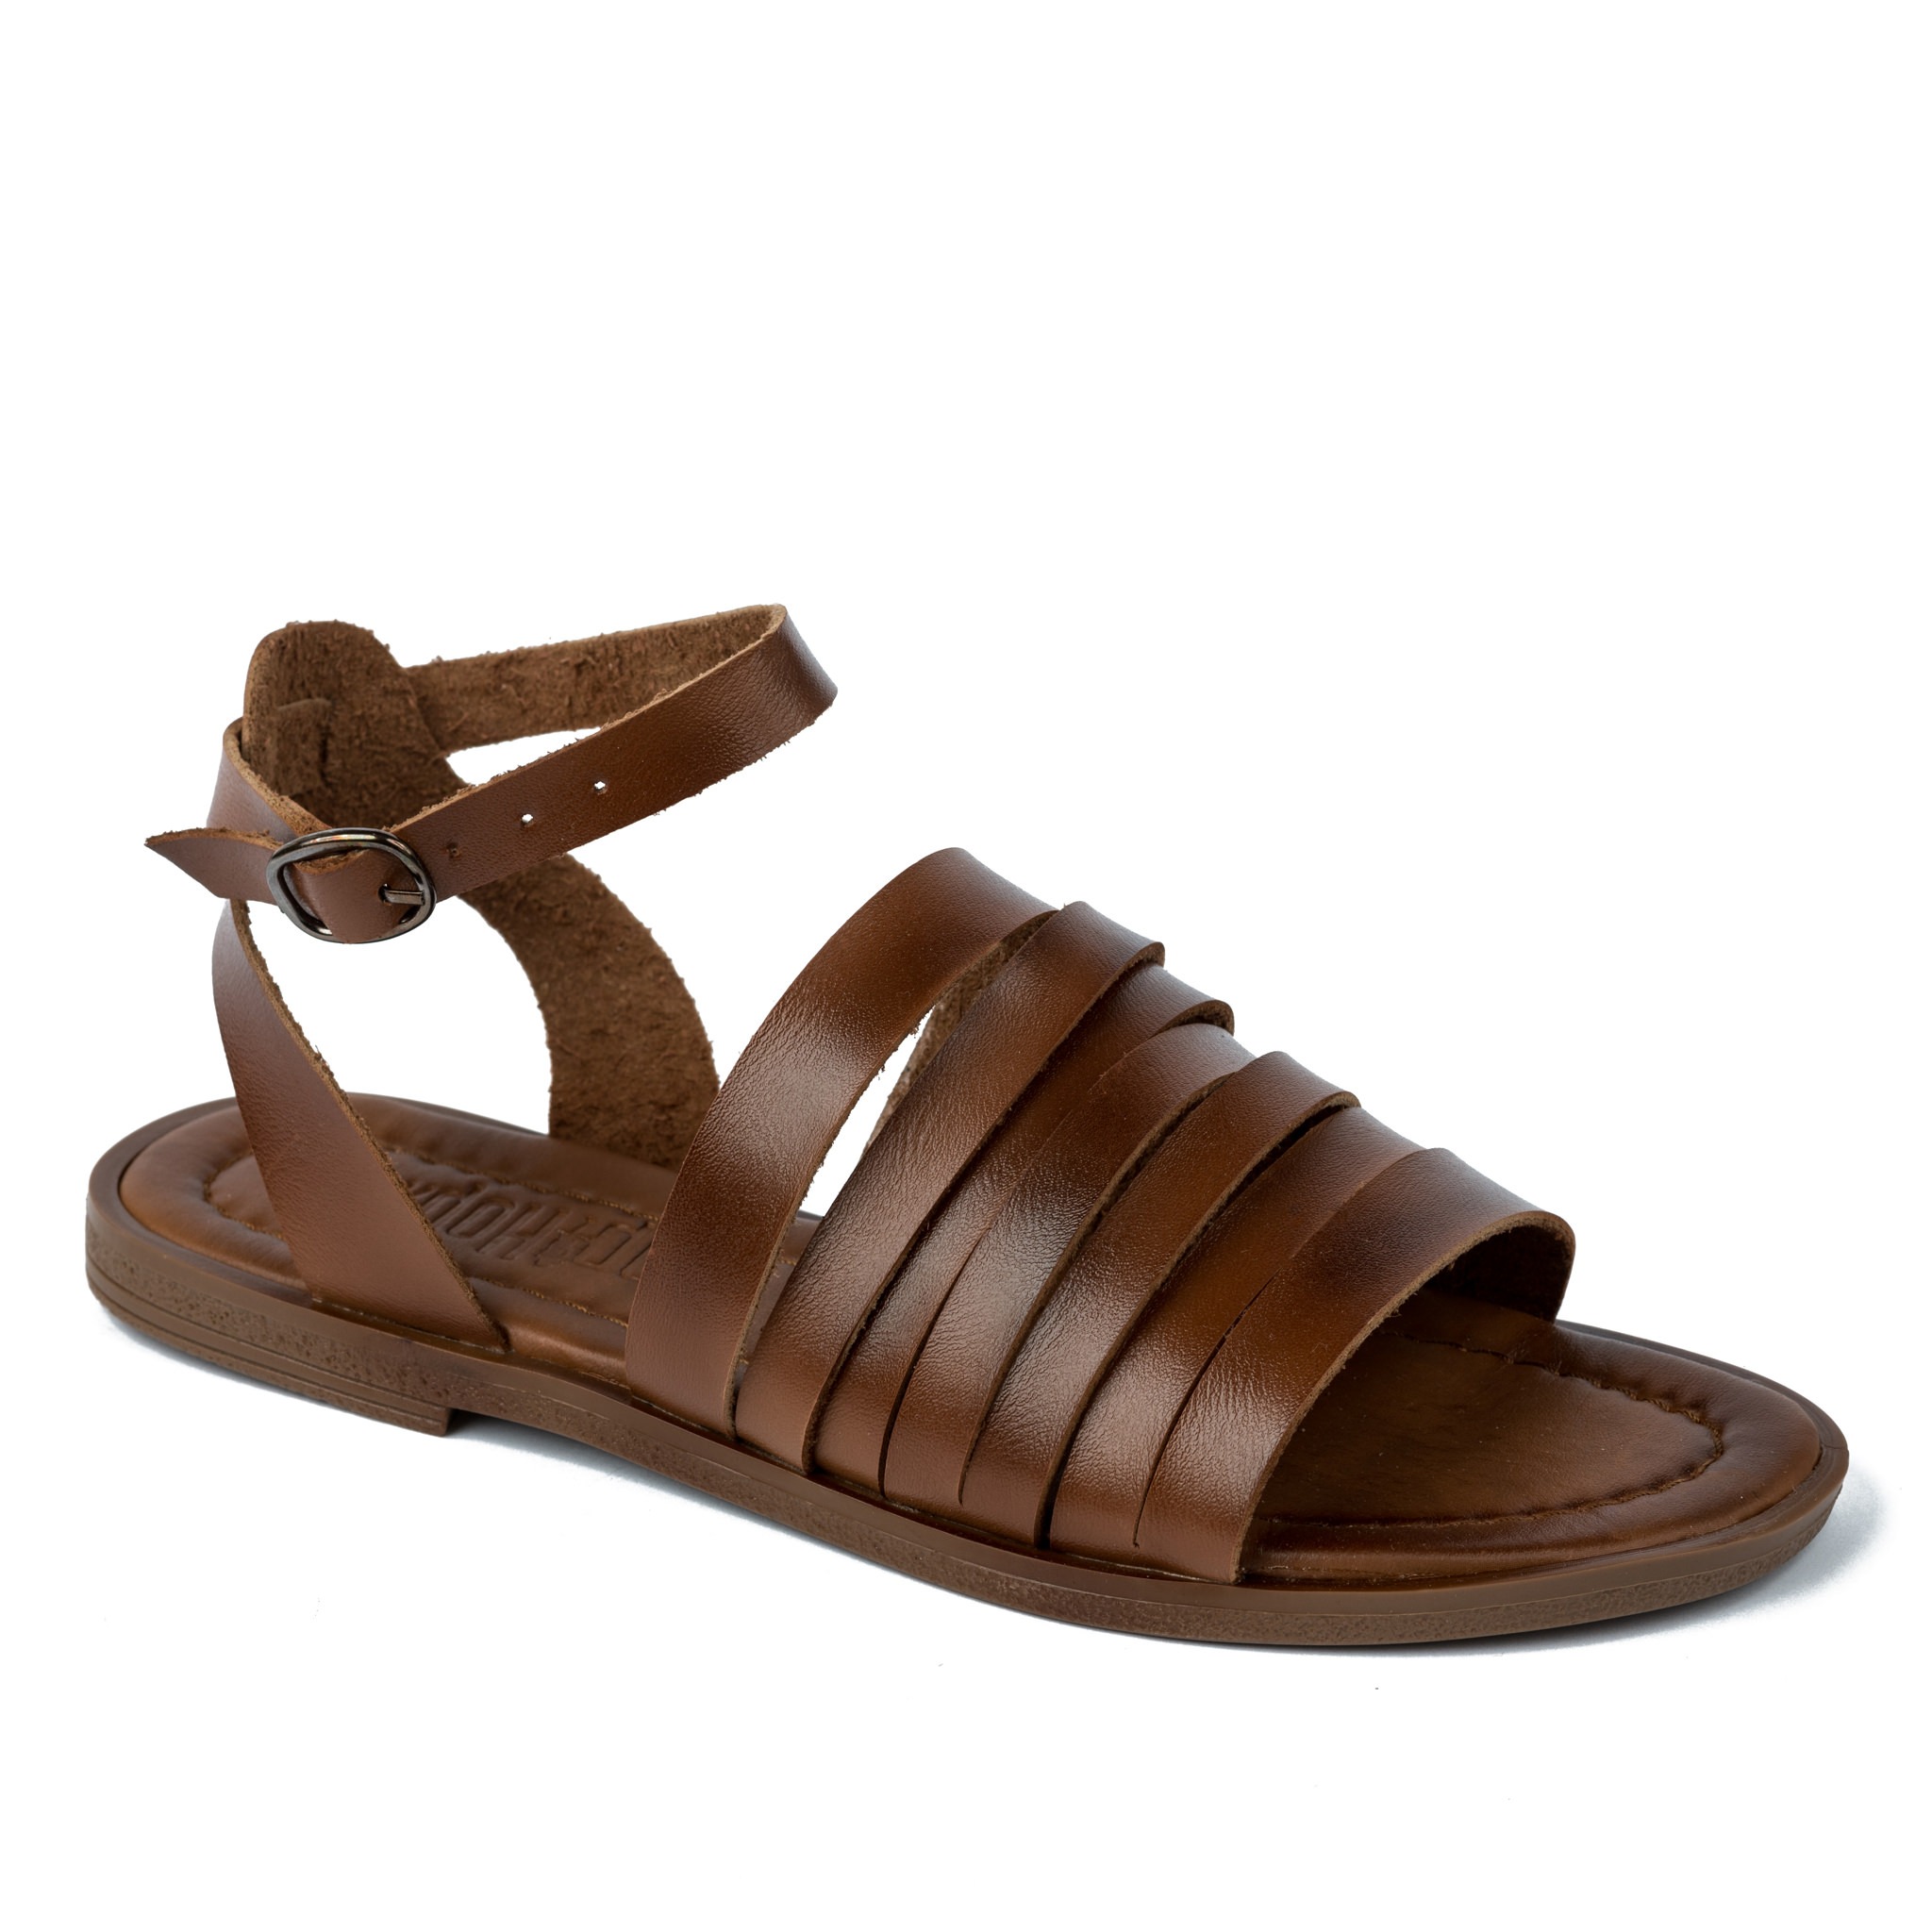 Women sandals A264 - CAMEL